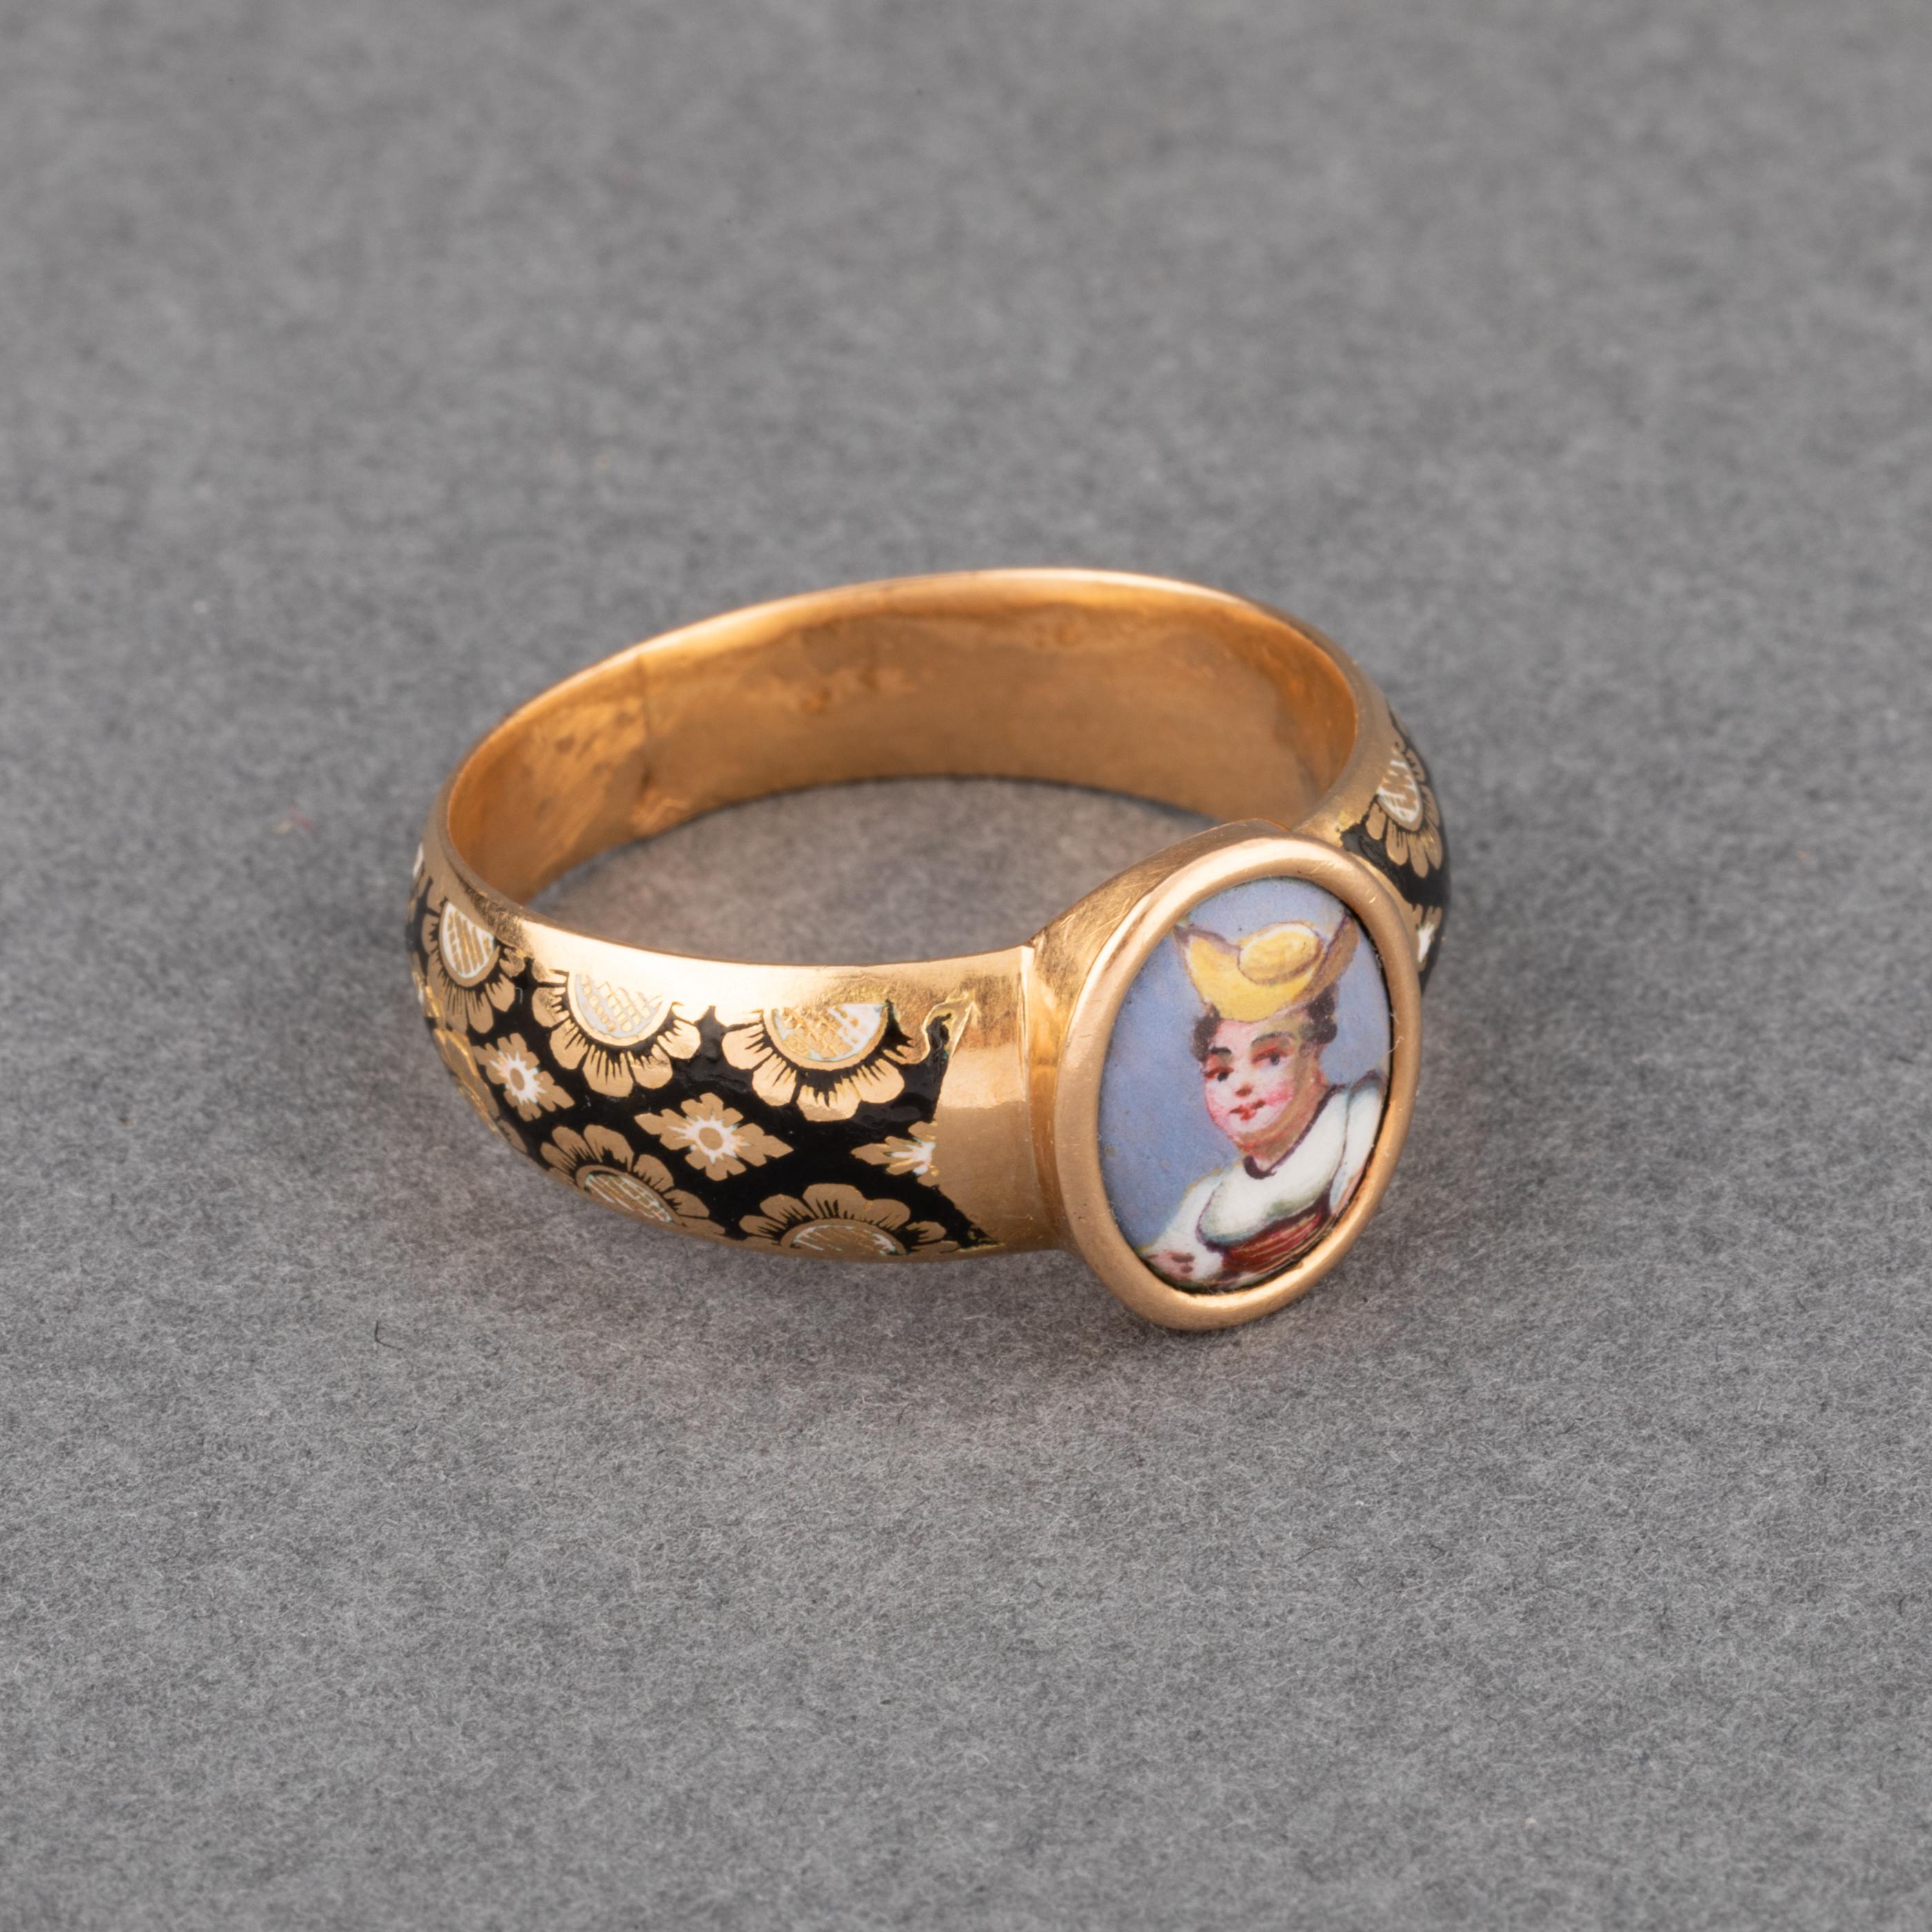 Antique Gold and Enamel Secret Ring 1